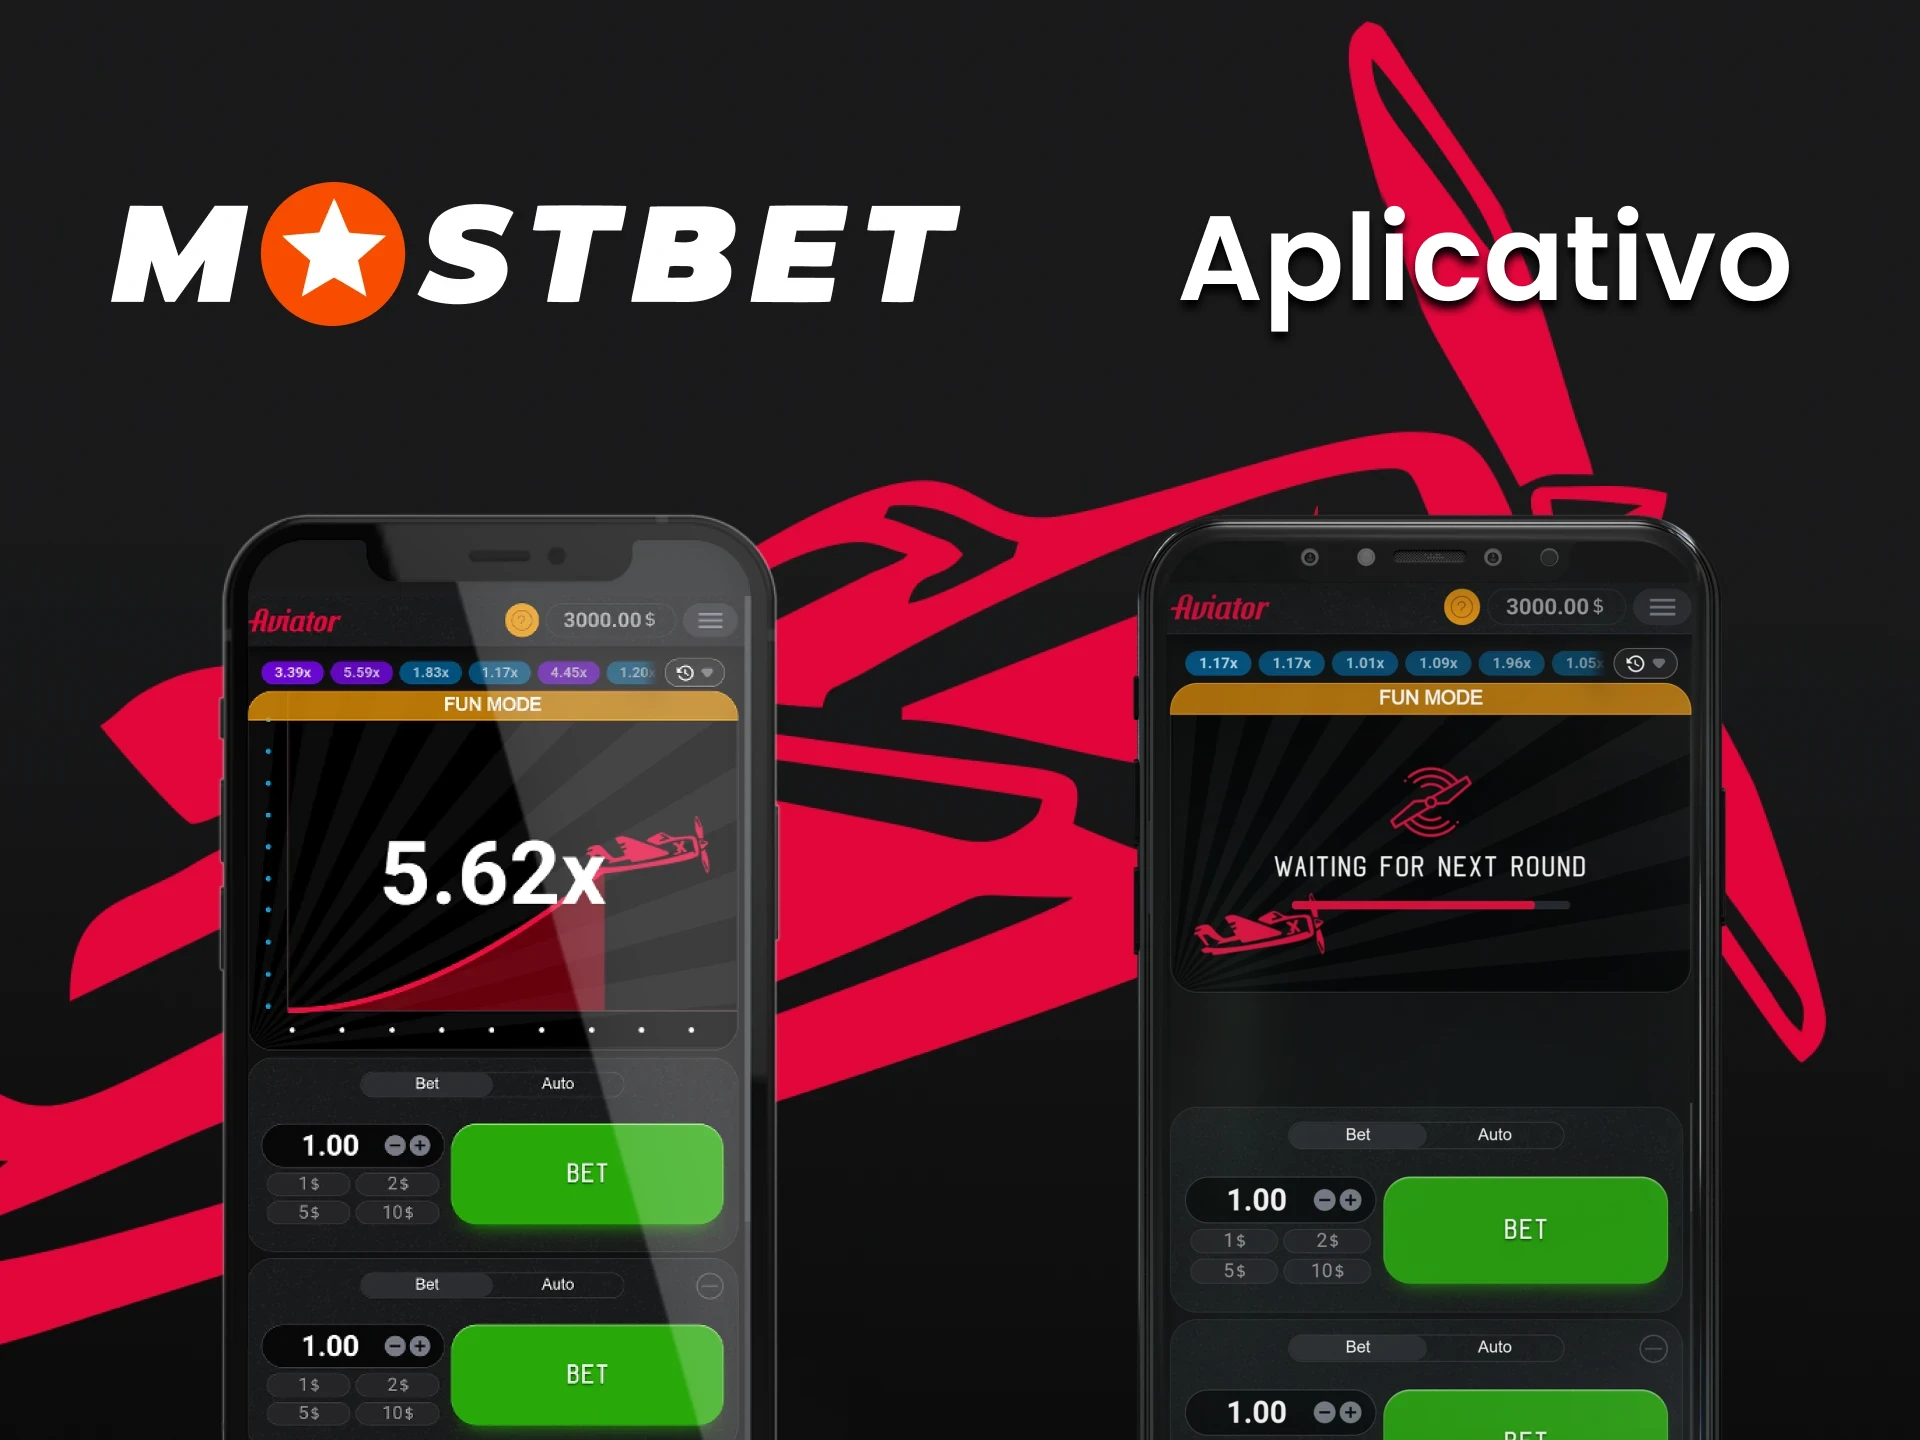 Usando o aplicativo Mostbet em seu telefone, você também pode jogar Aviator.